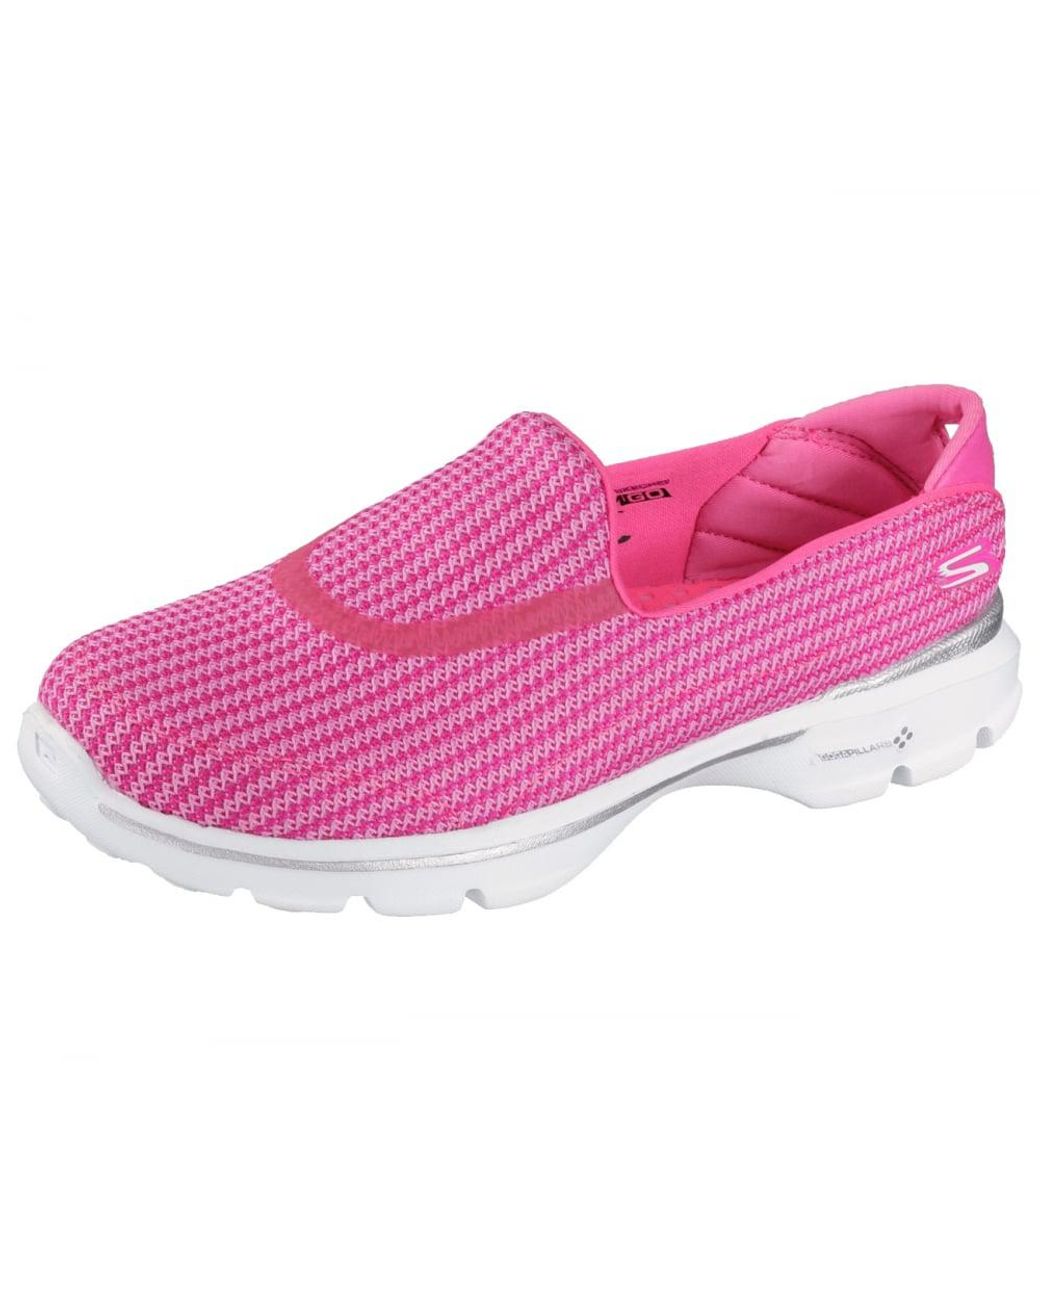 Skechers Go Walk 3 Athletic Sneakers in Pink | Lyst Australia